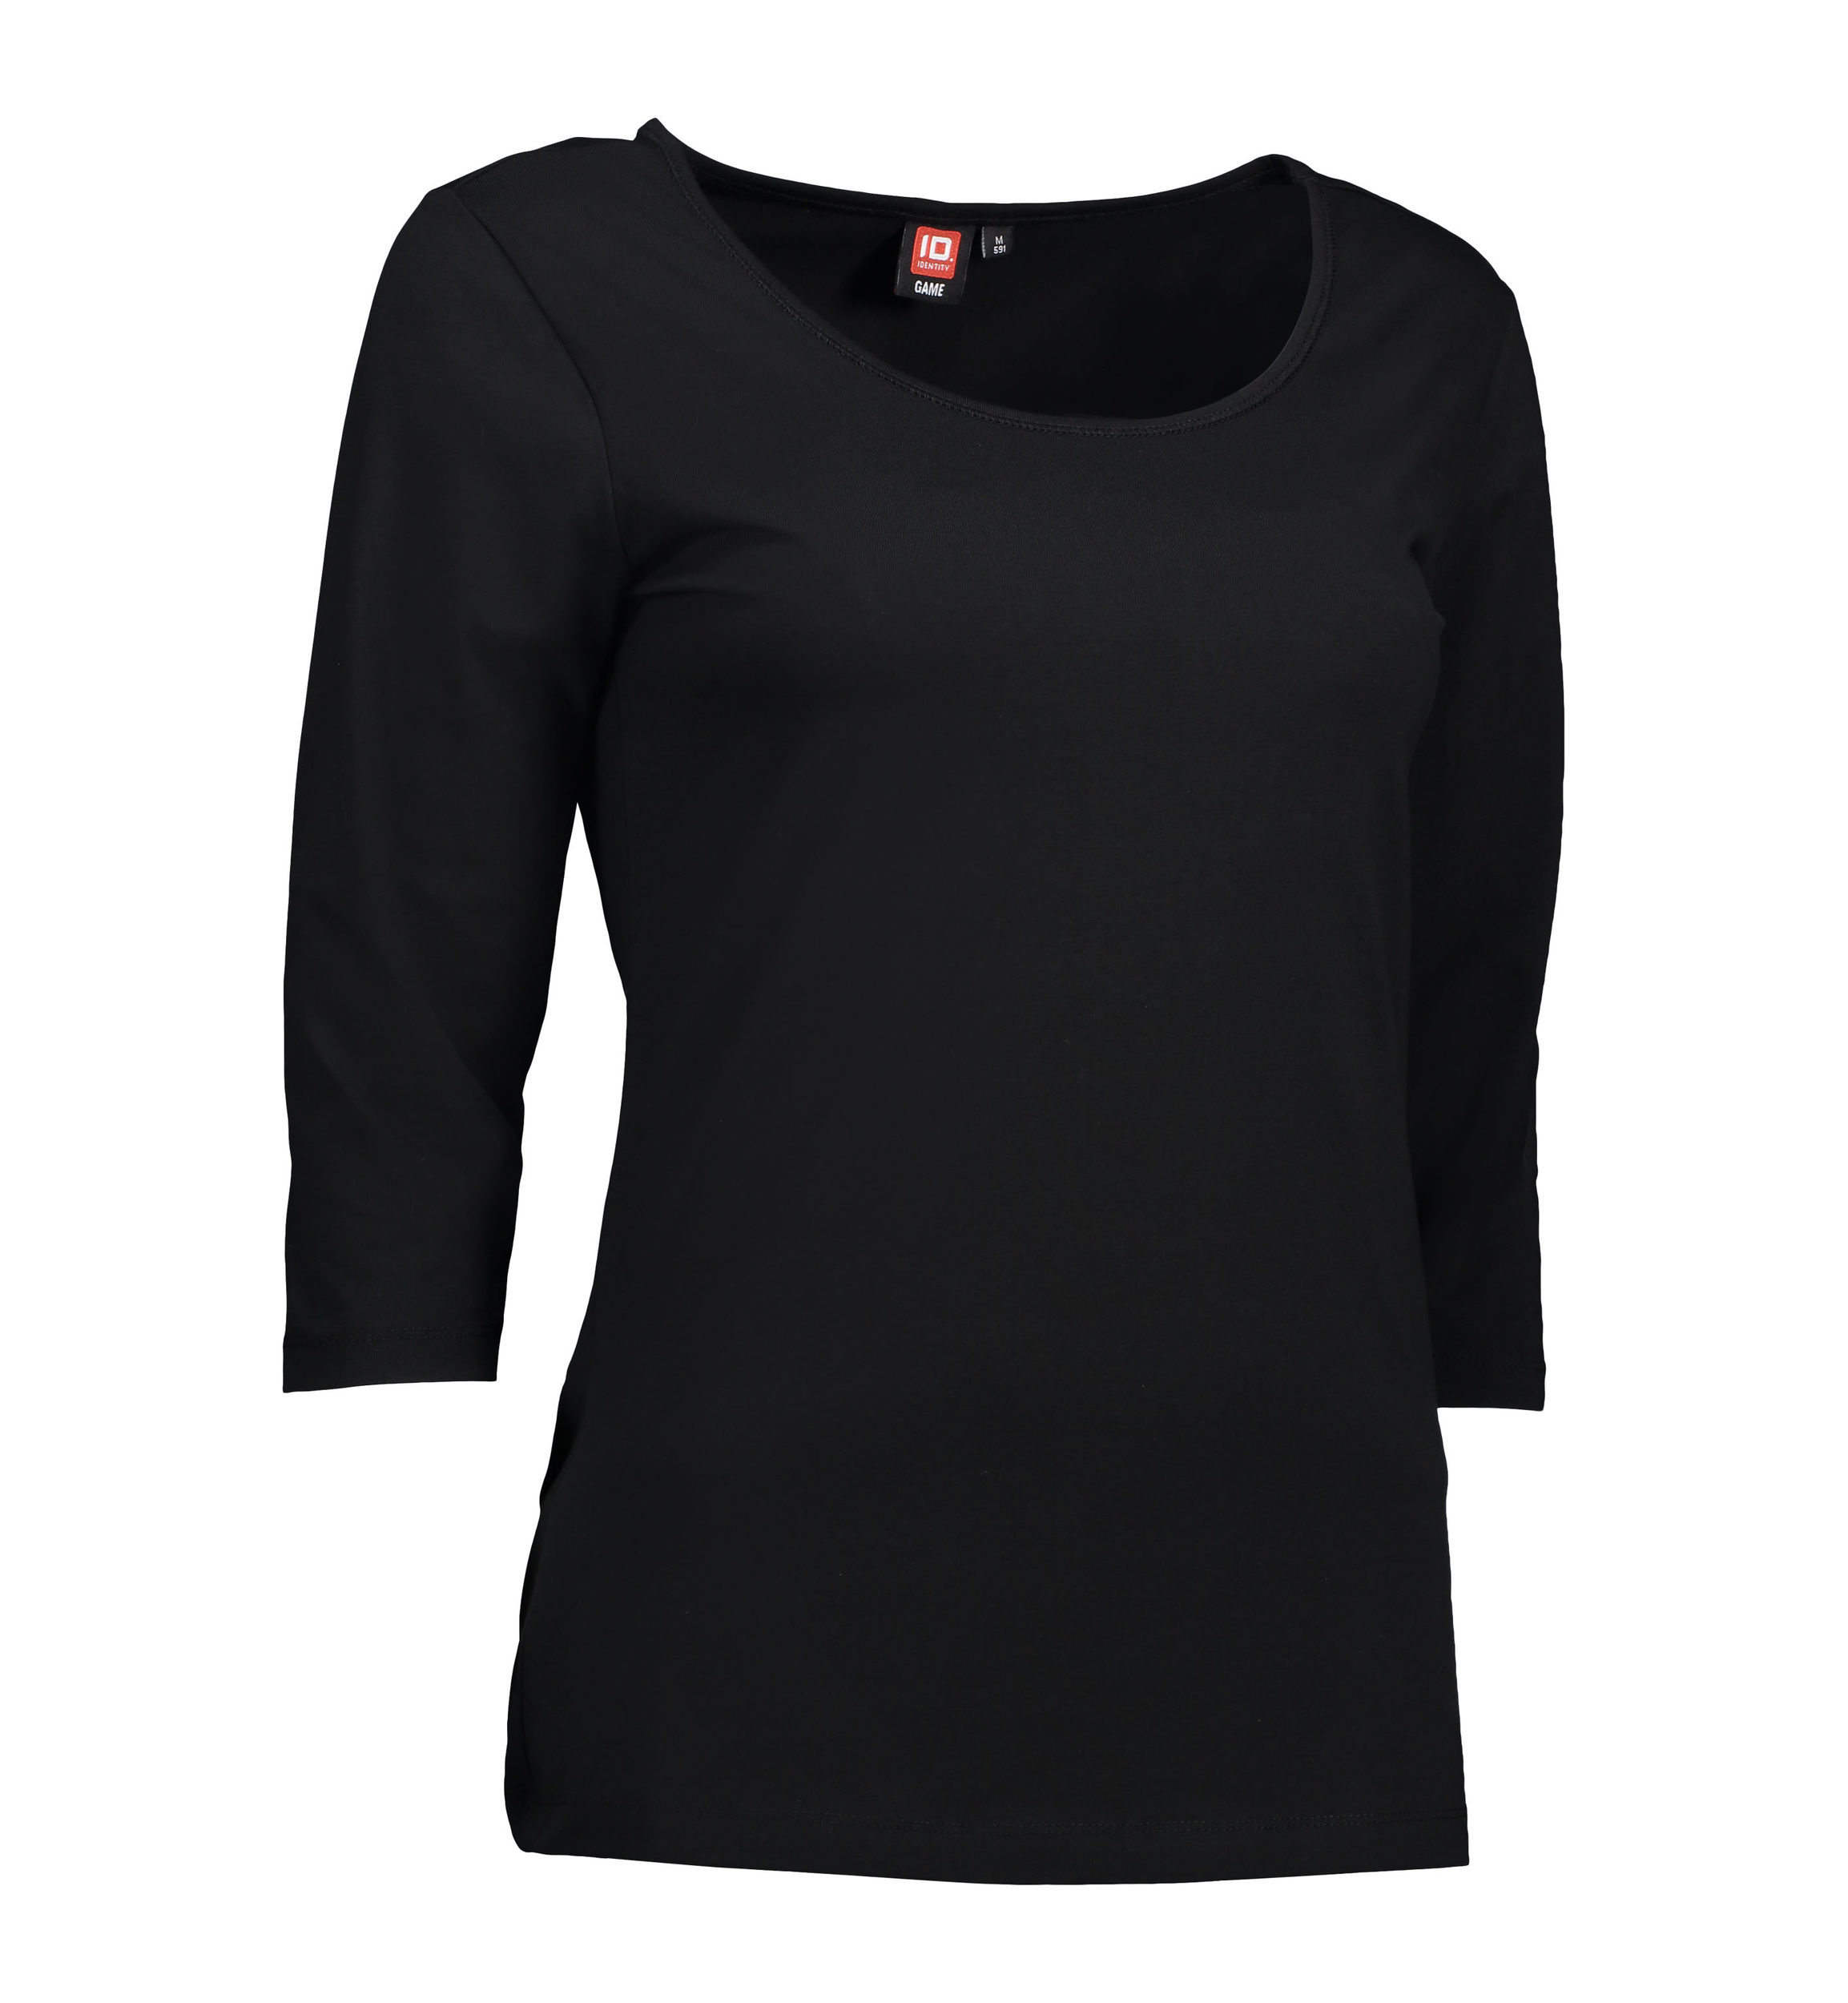 Se 3/4-ærmet dame t-shirt i sort - L hos Sygeplejebutikken.dk